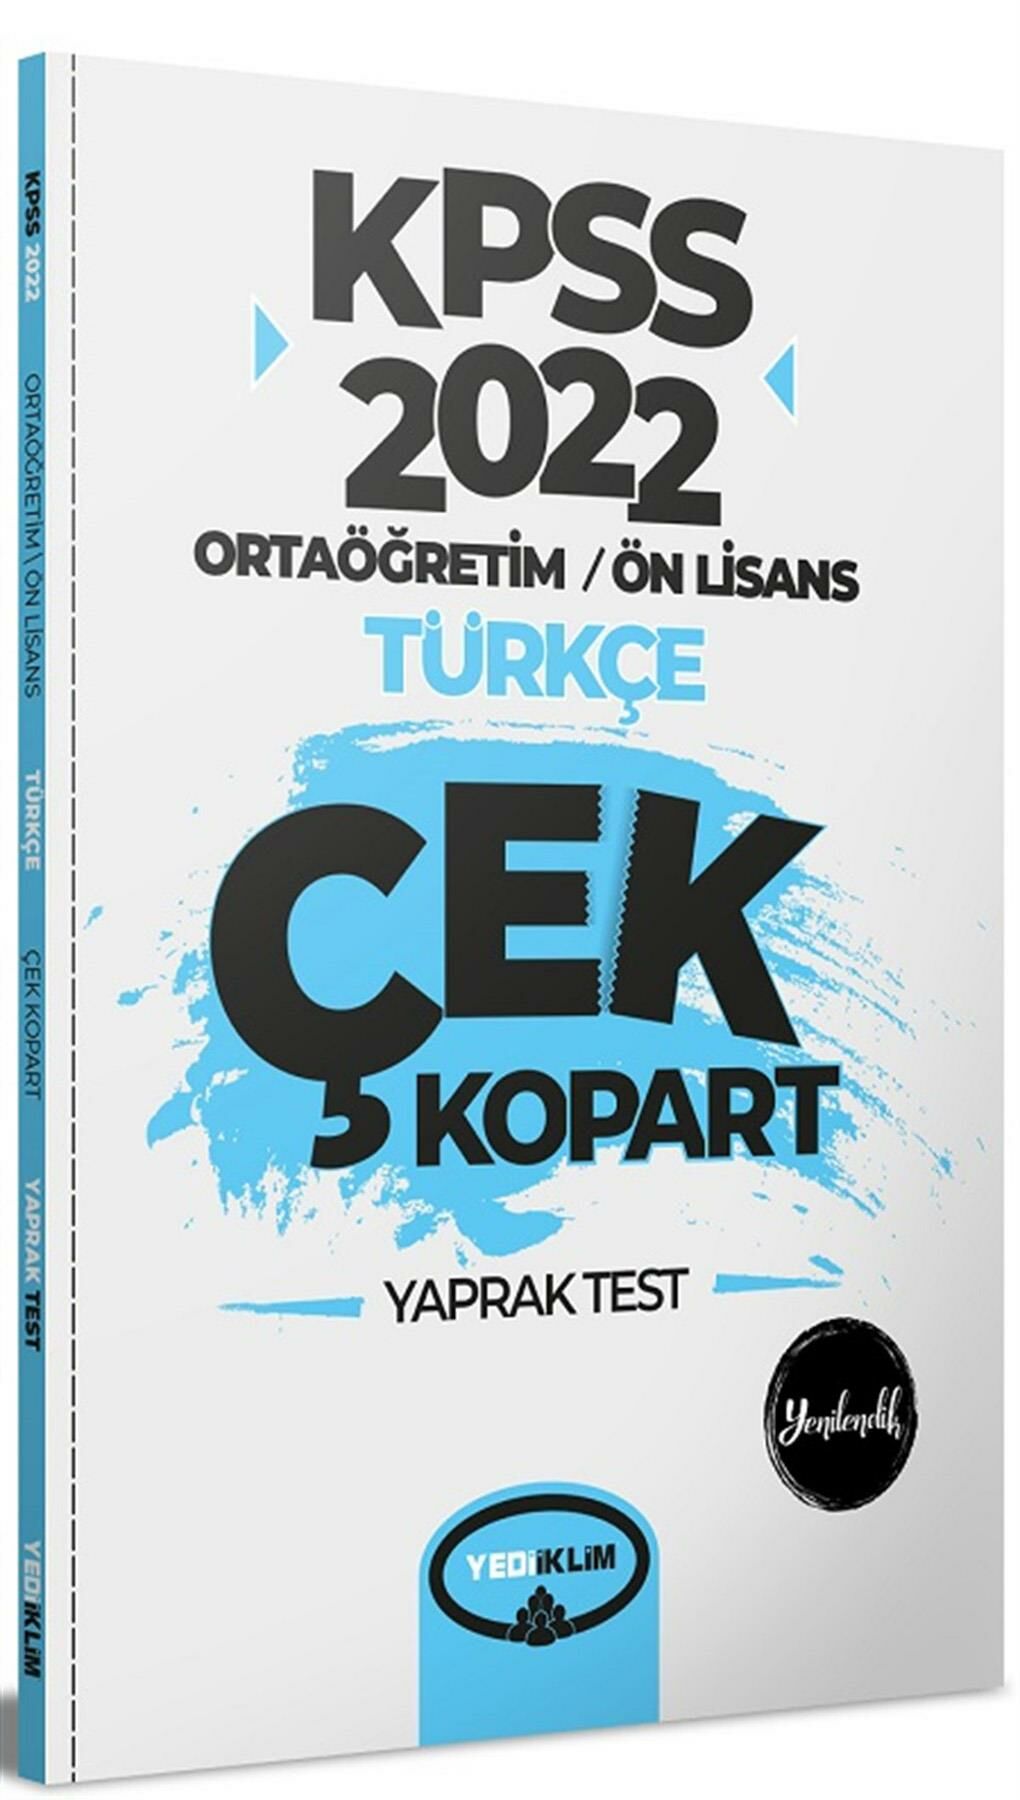 Yediiklim KPSS Ortaöğretim Ön Lisans Genel Yetenek Genel Kültür Türkçe Çek Kopart Yaprak Test